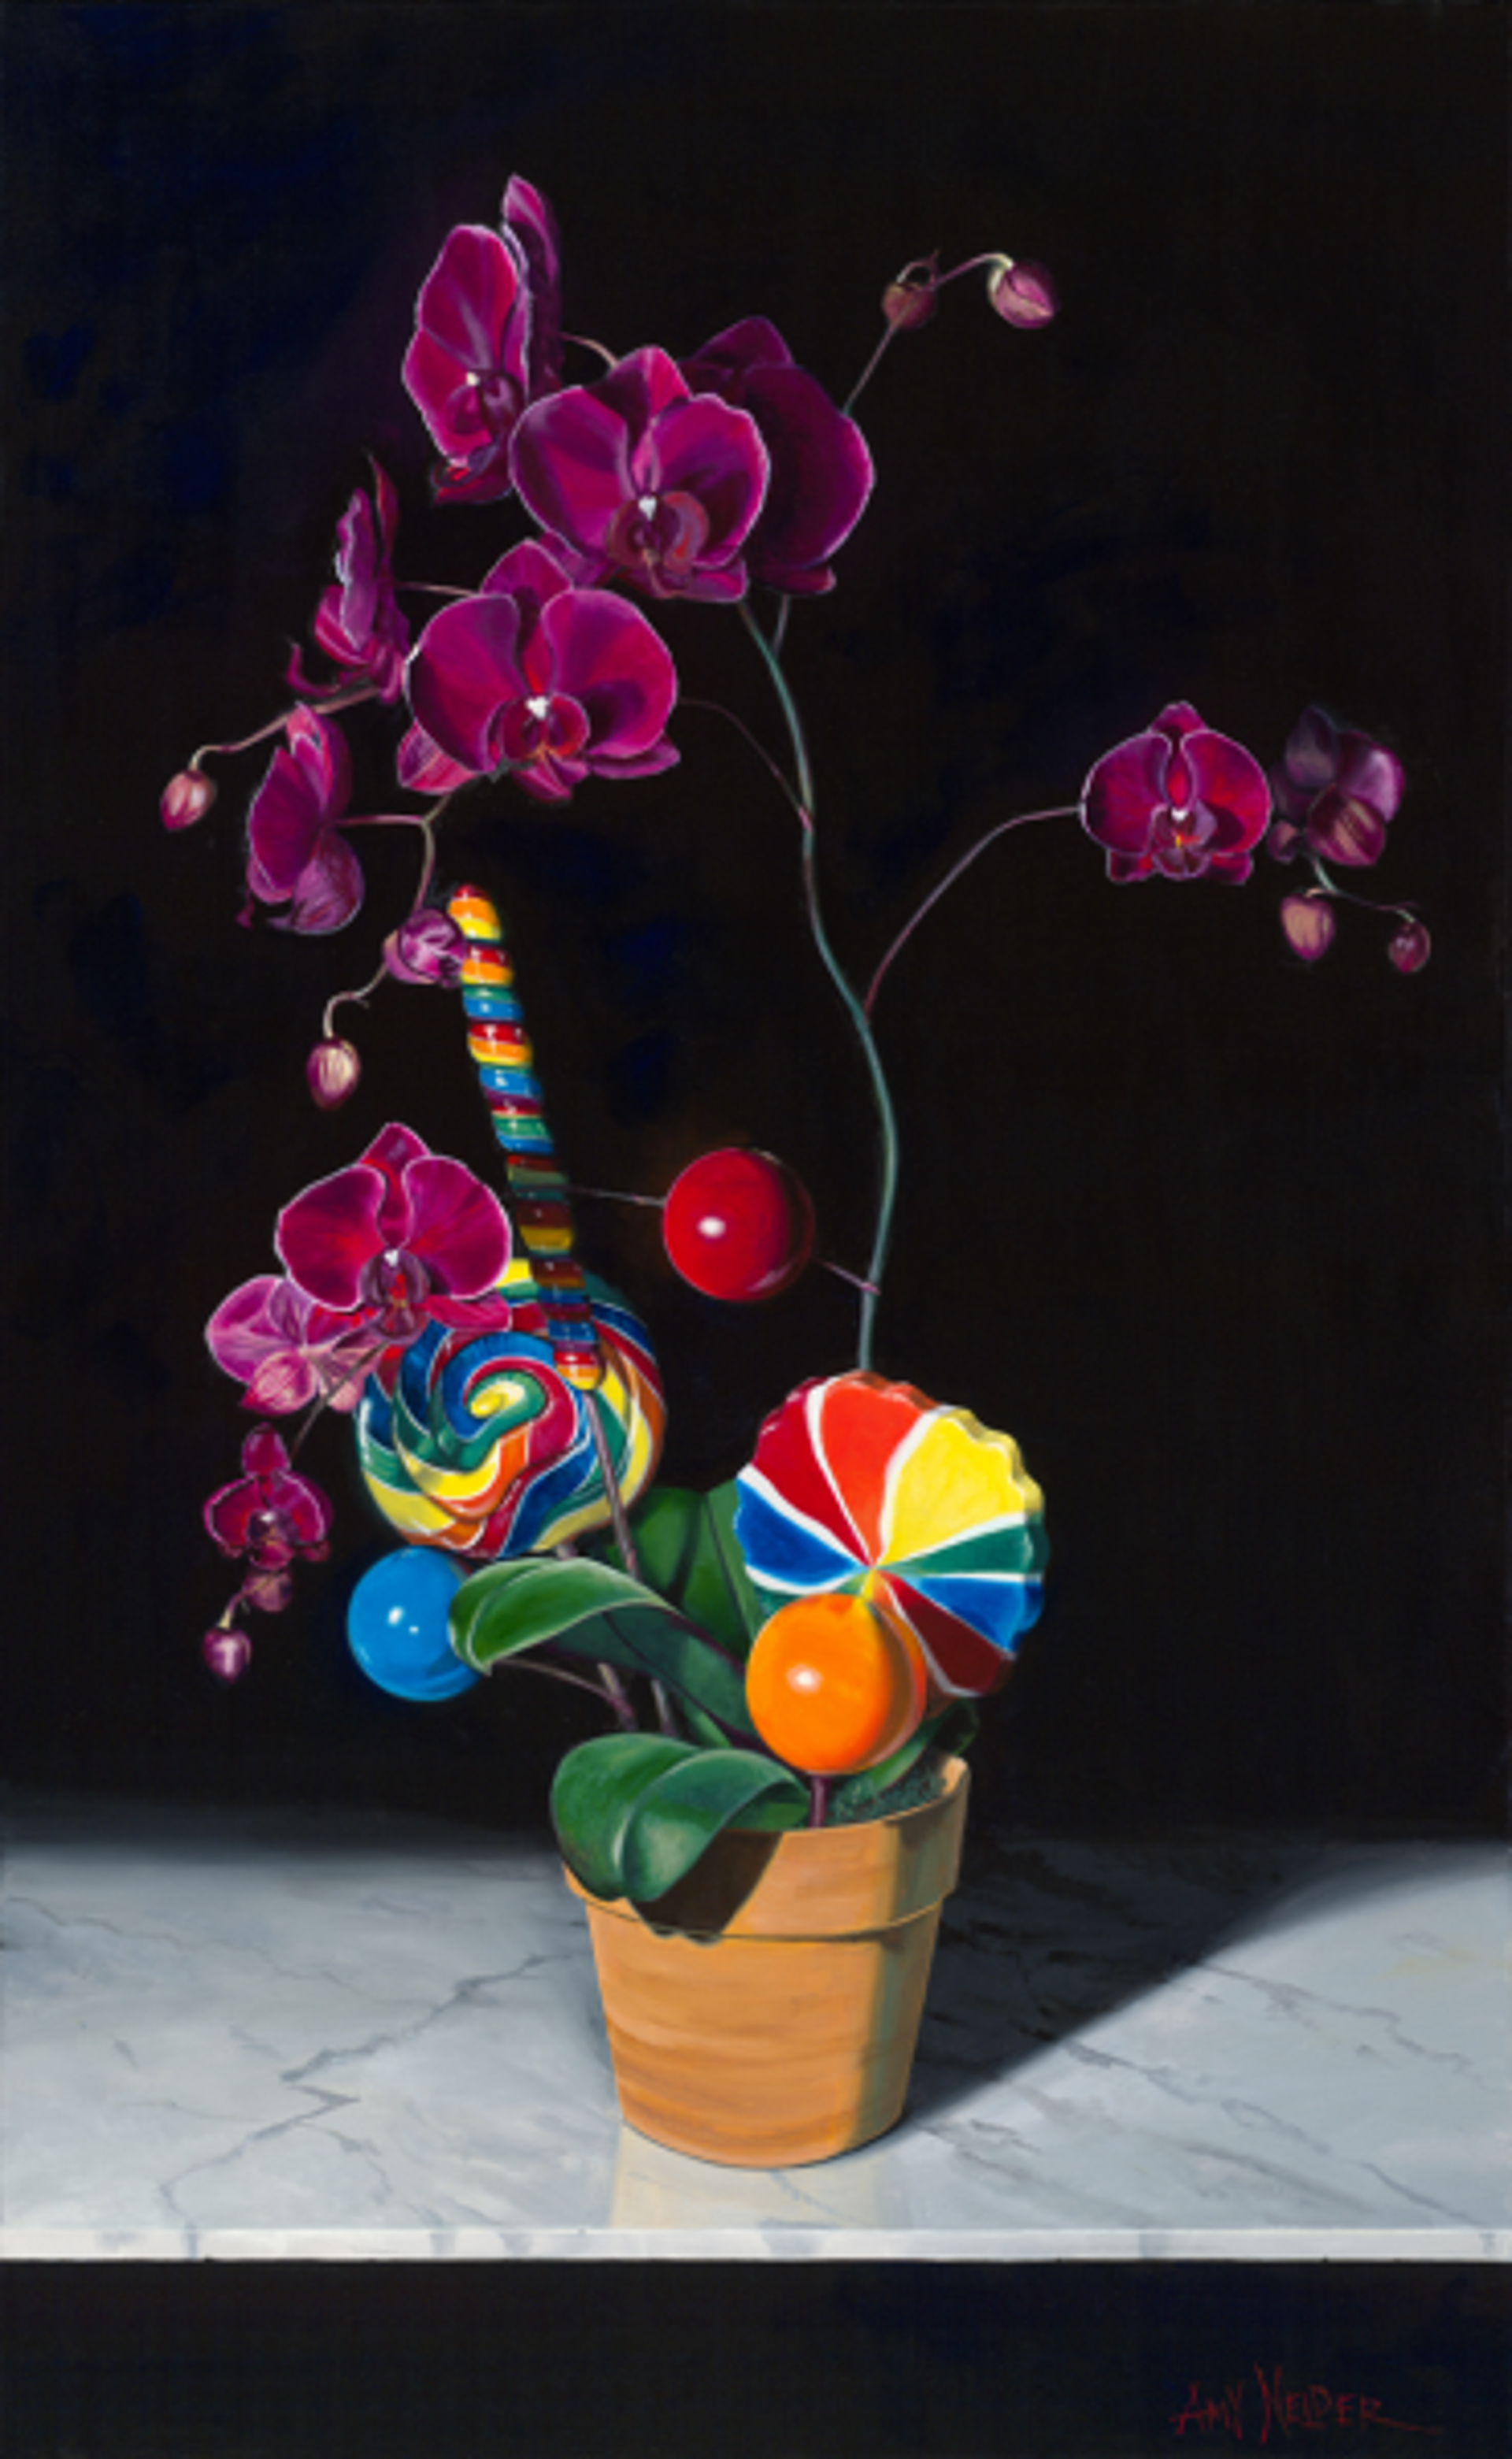 Orchidpop by Amy Nelder